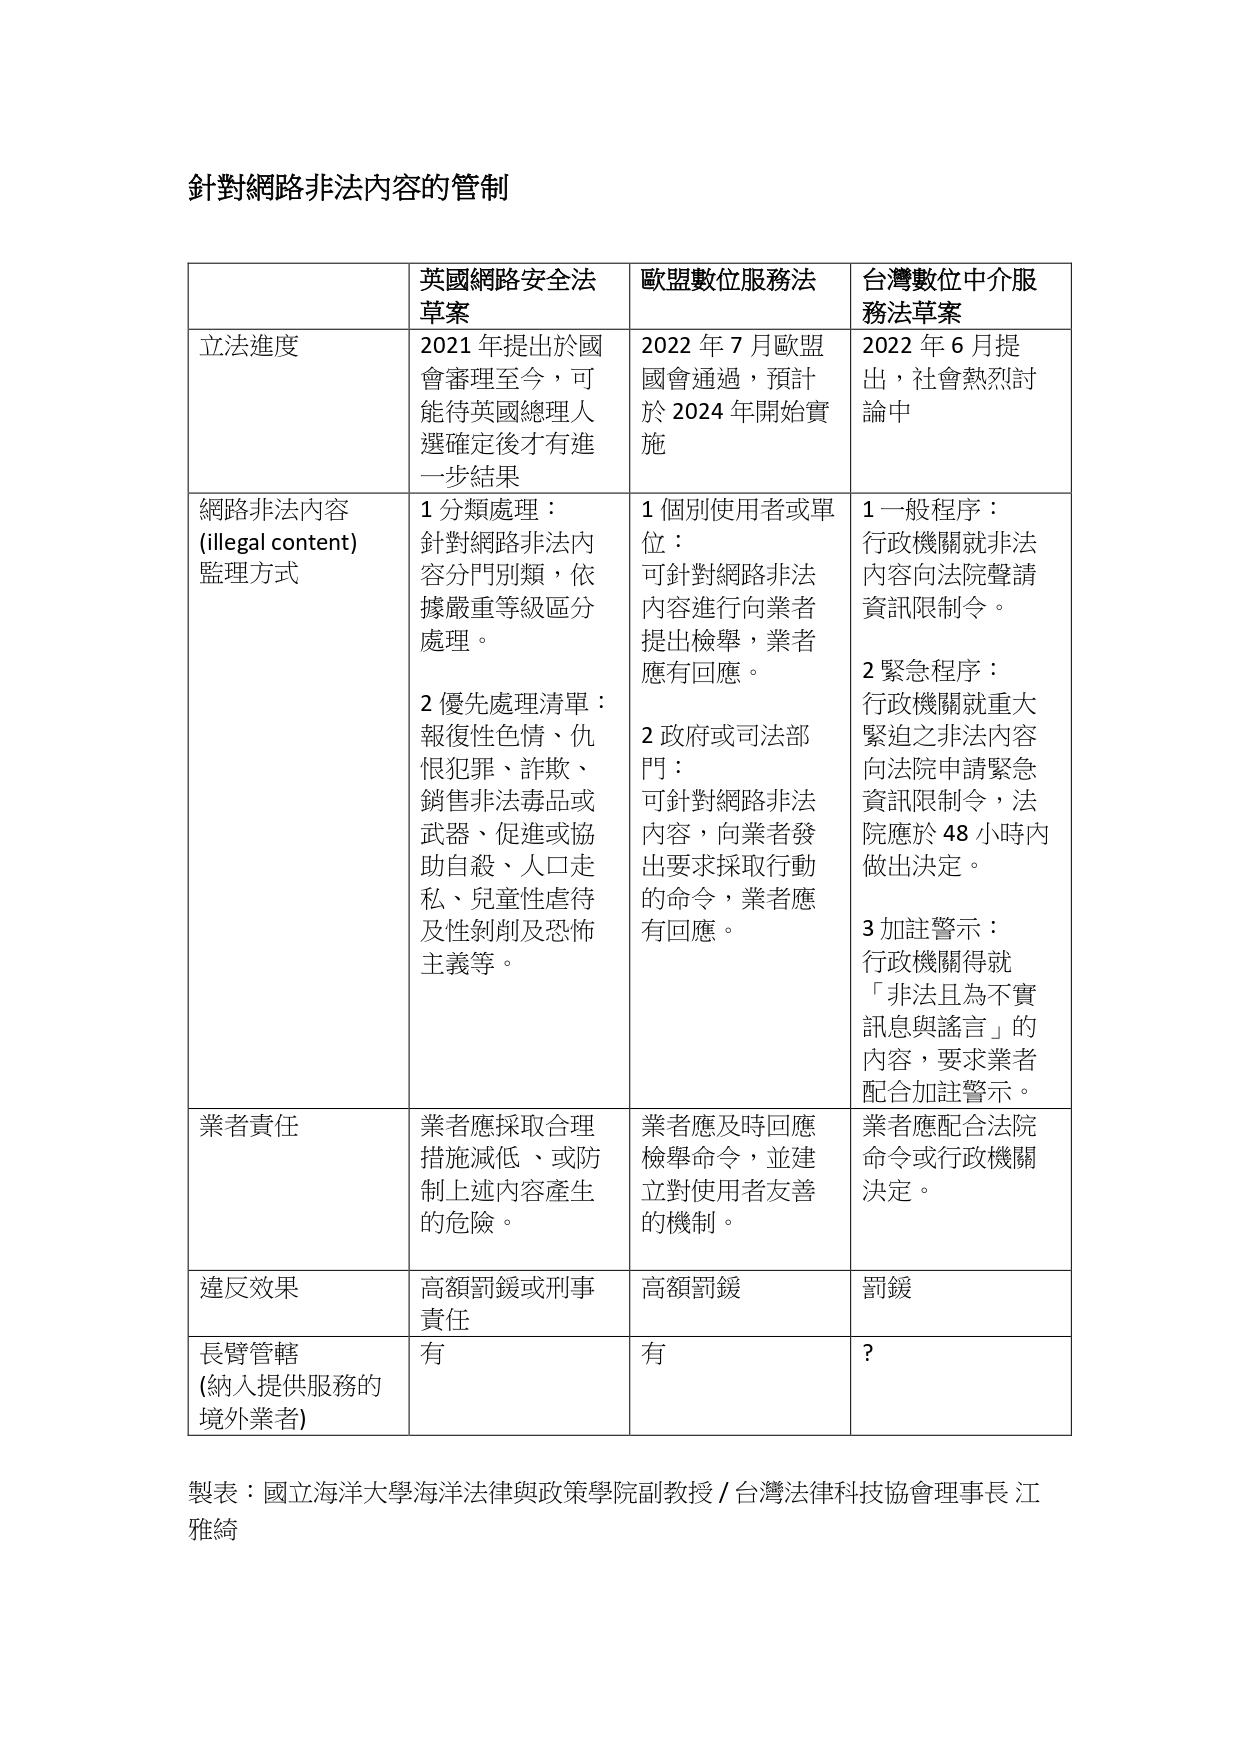 2022/08/23-從歐盟和英國法案看台灣的資訊限制令